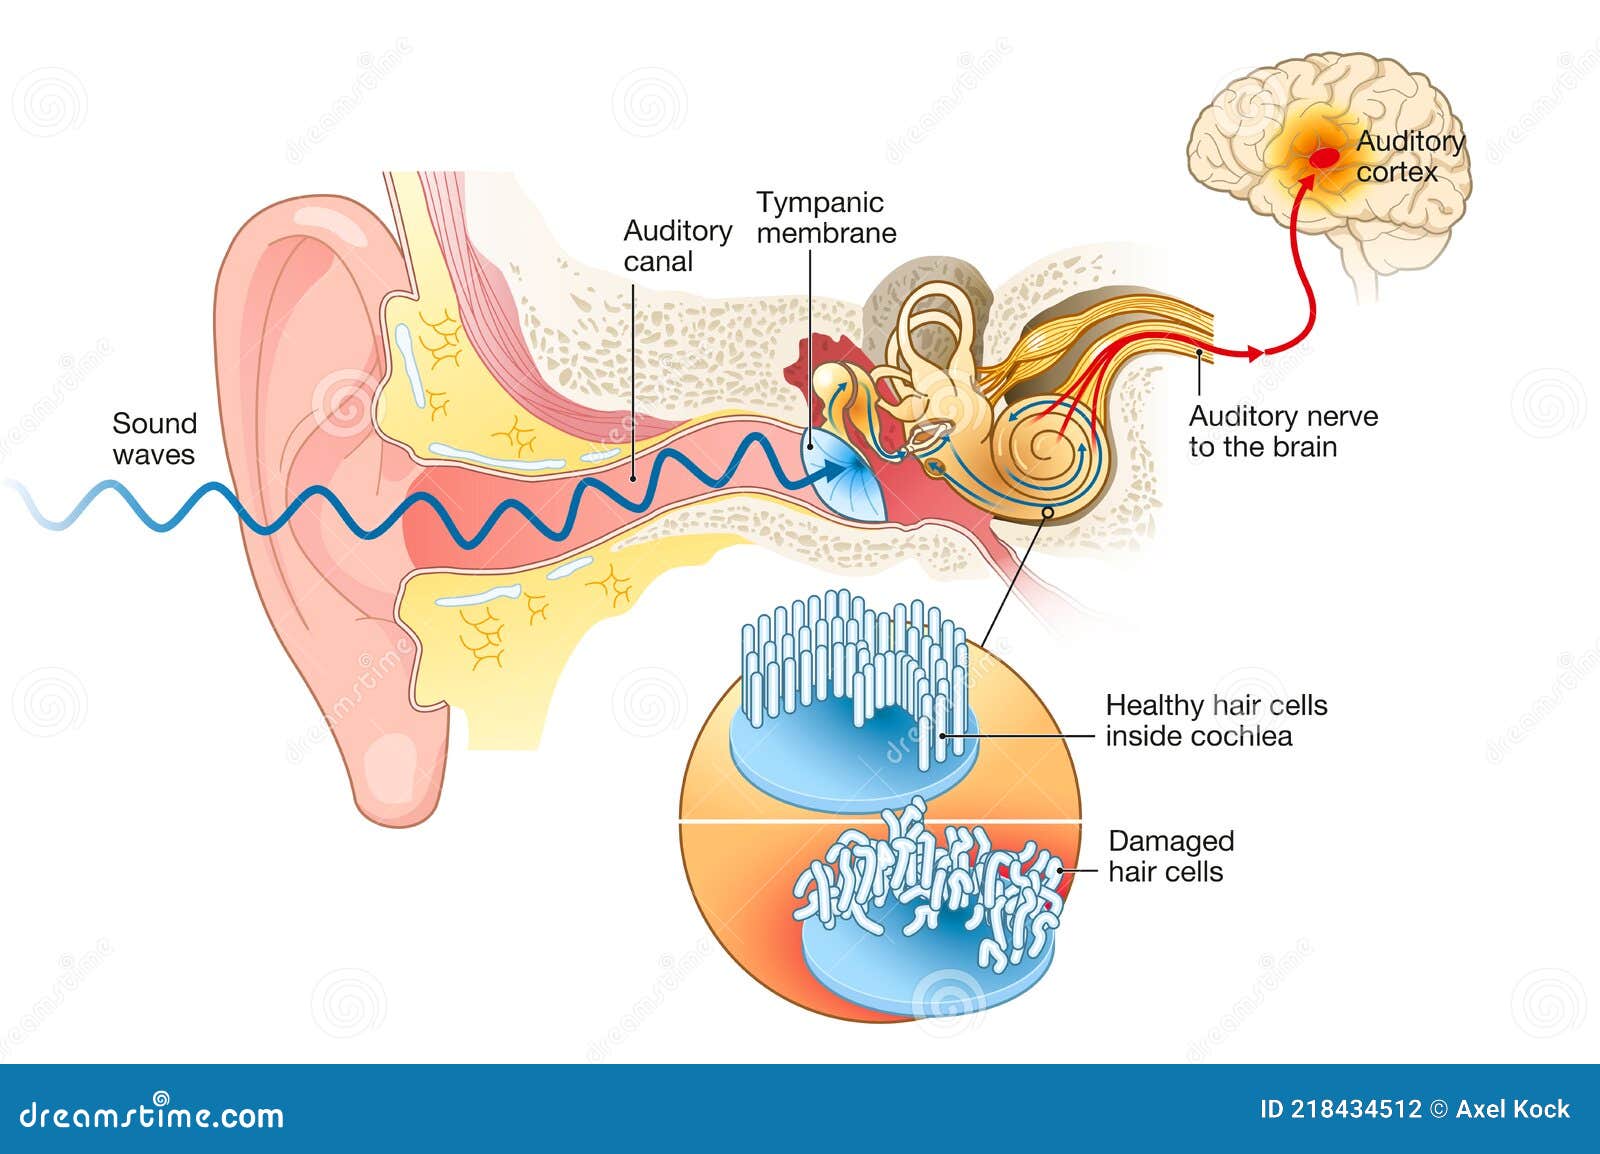 tinnitus. damaged hair cells inside cochlea